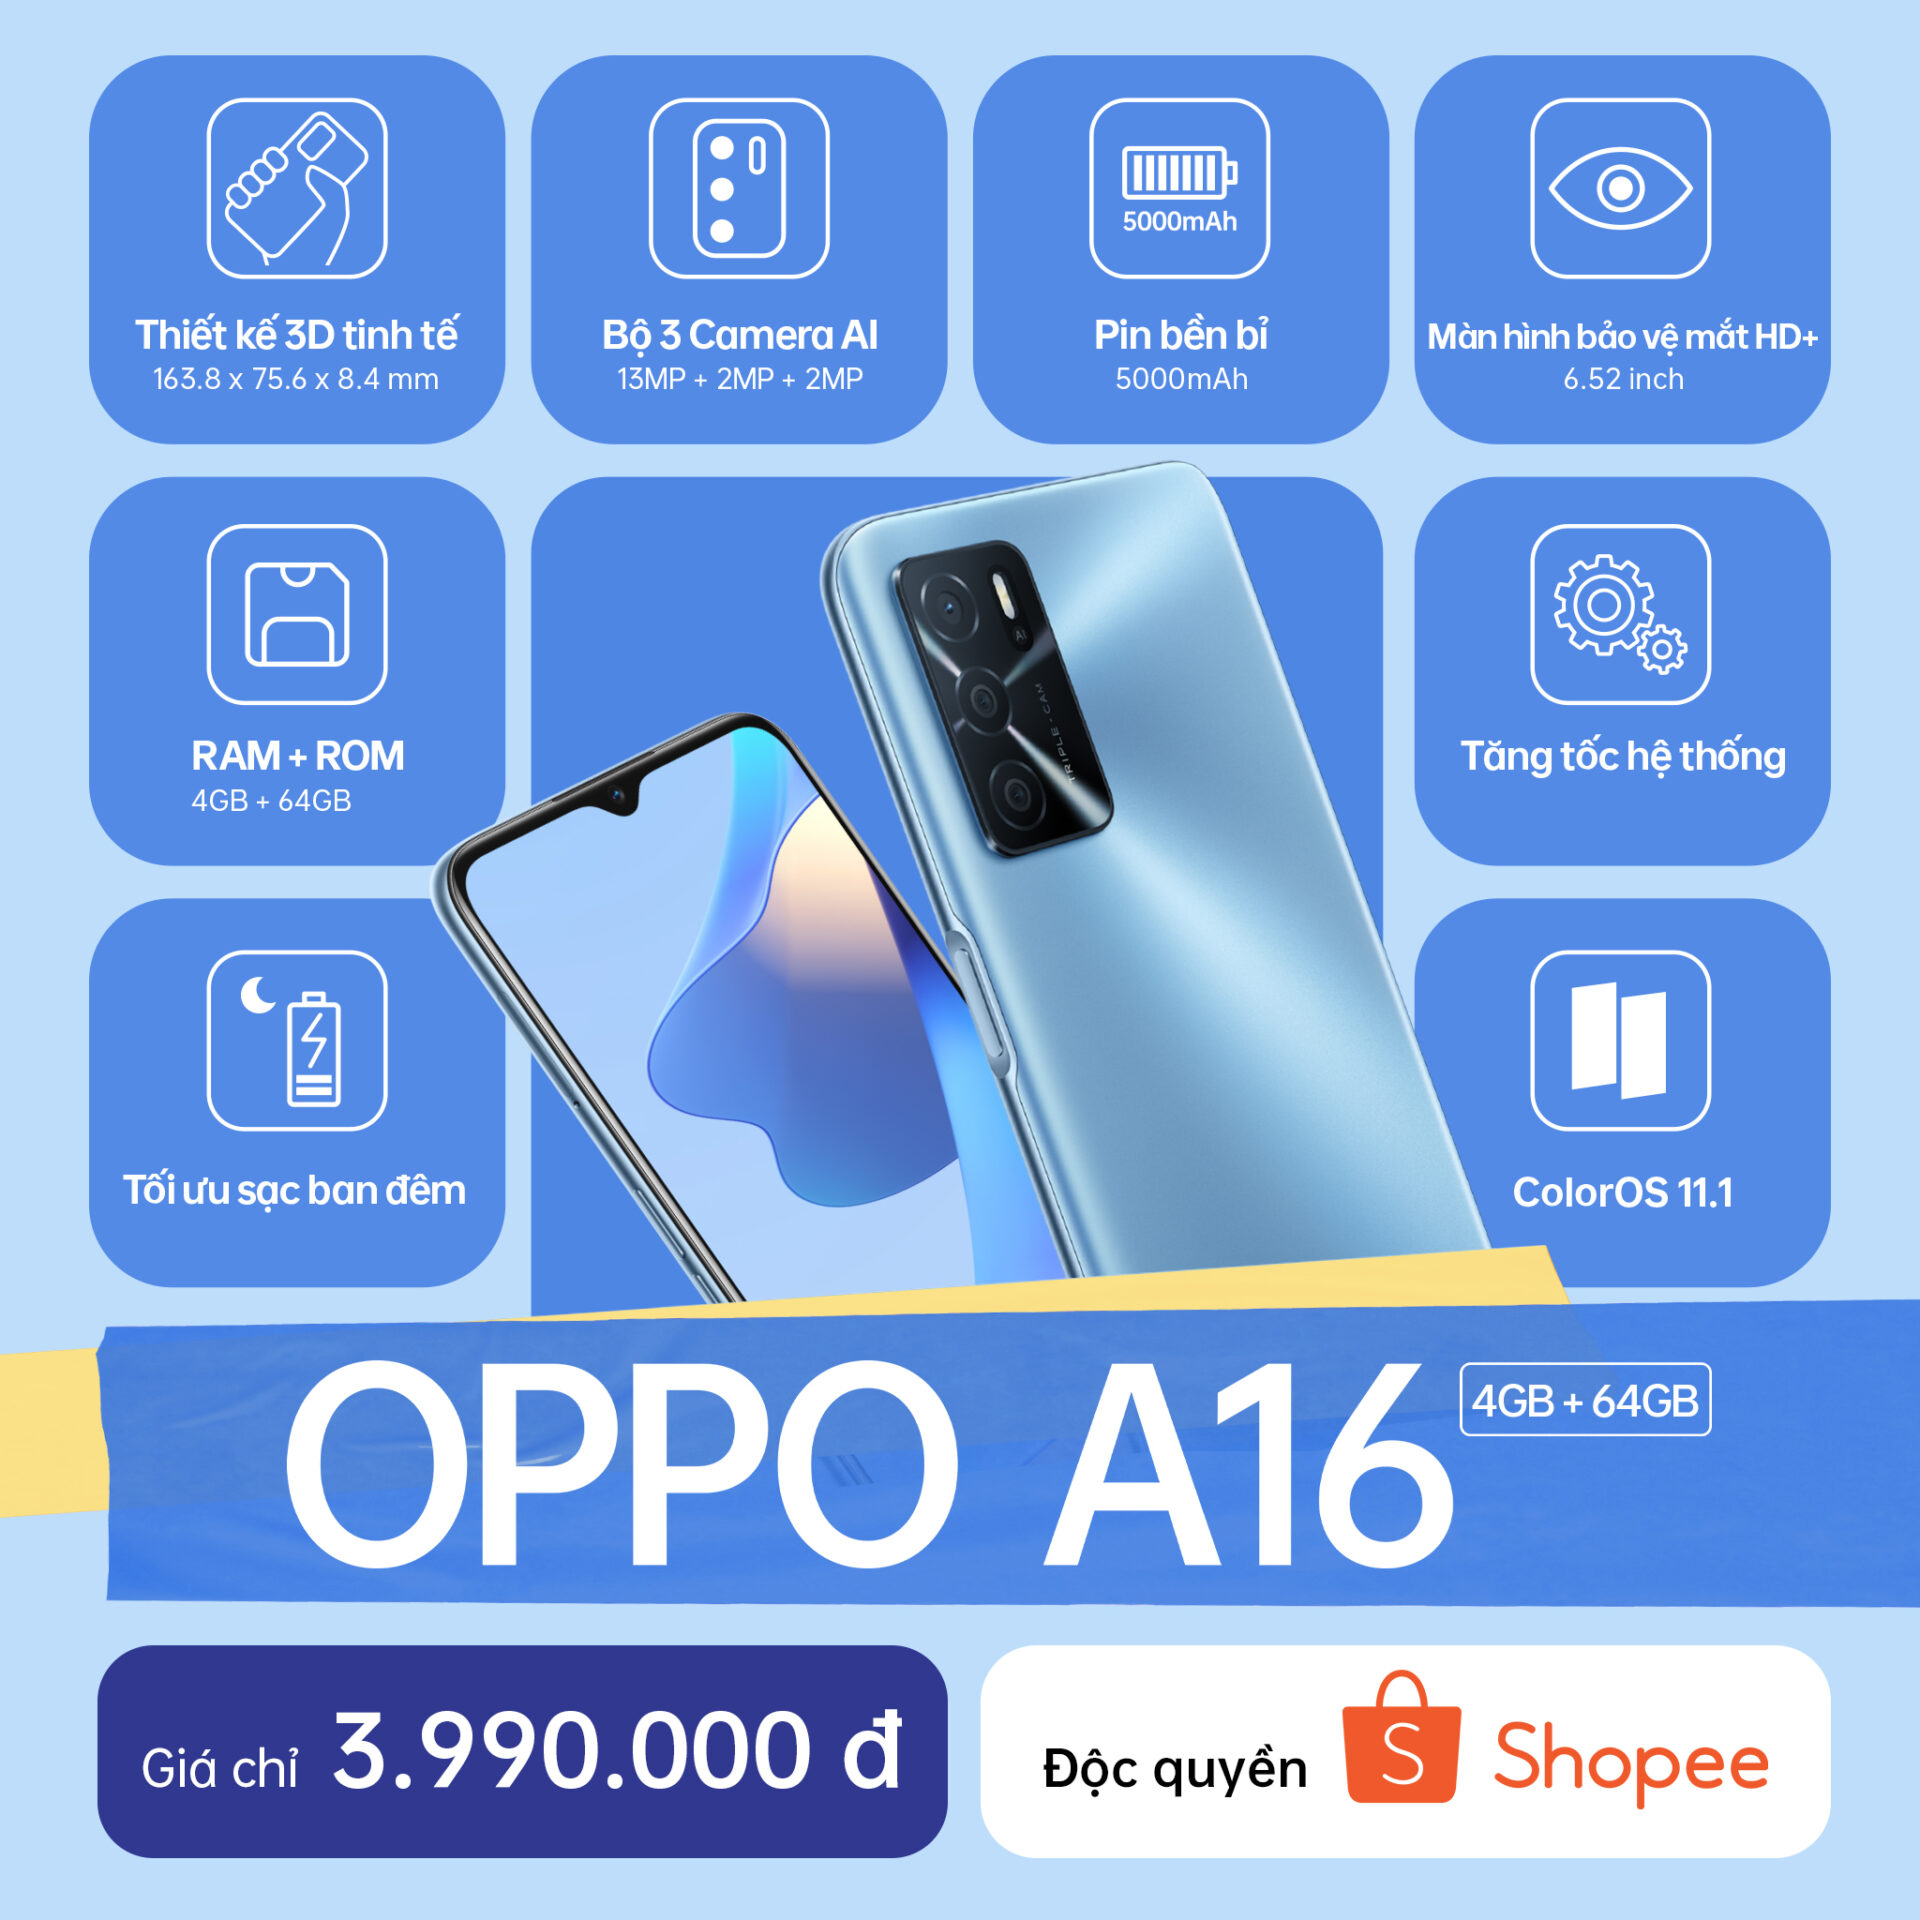 OPPO ra mắt OPPO A16: thiết kế thời thượng, pin lớn cùng mức giá cực hấp dẫn